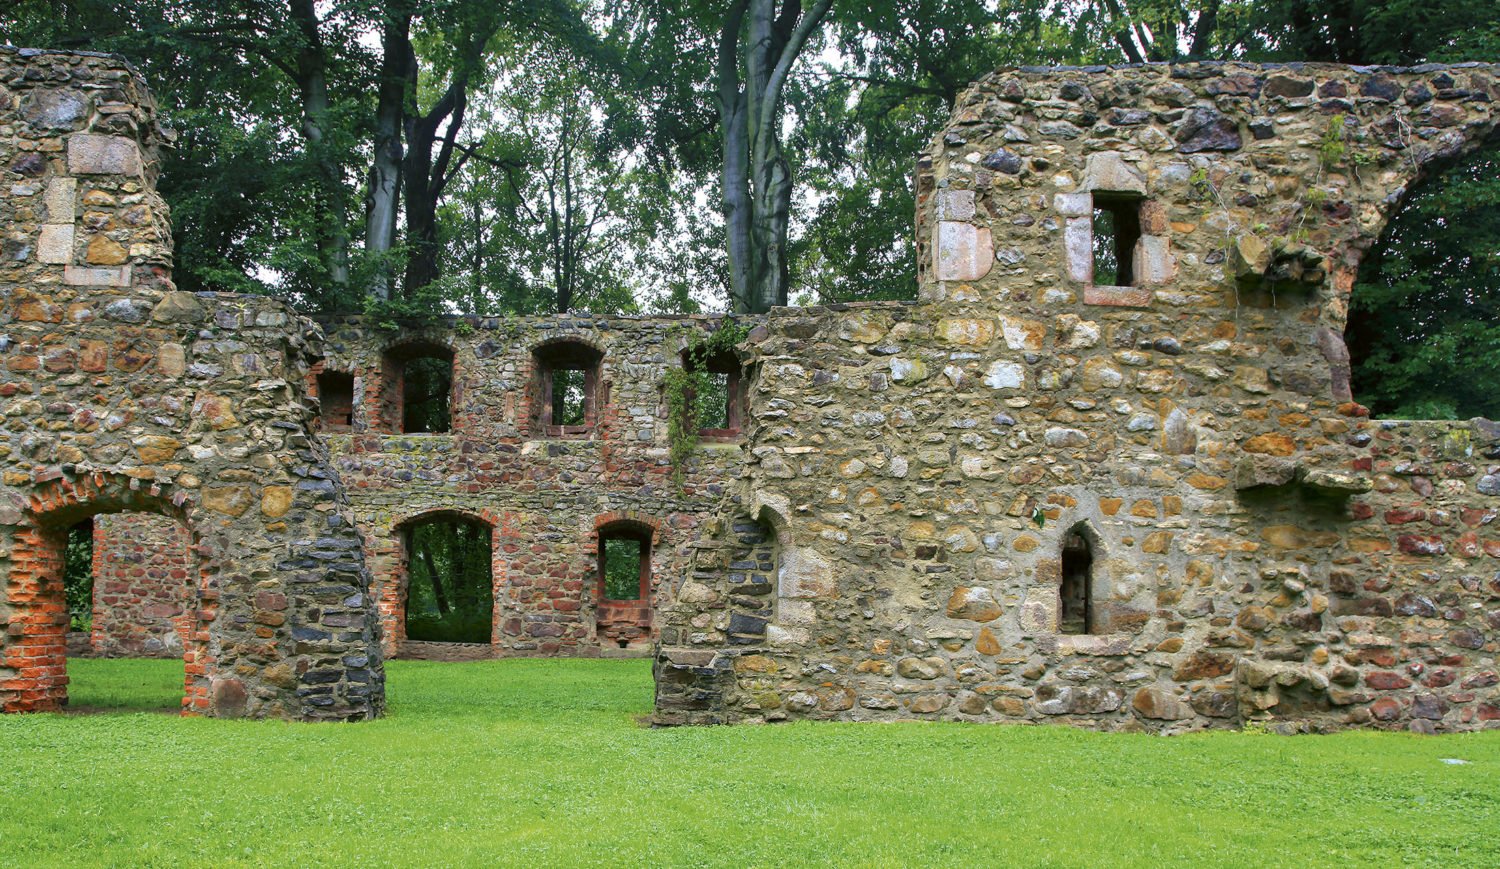 Sehenswerte Ruine – die ehemalige Zisterzienserinnenabtei Kloster Nimbschen